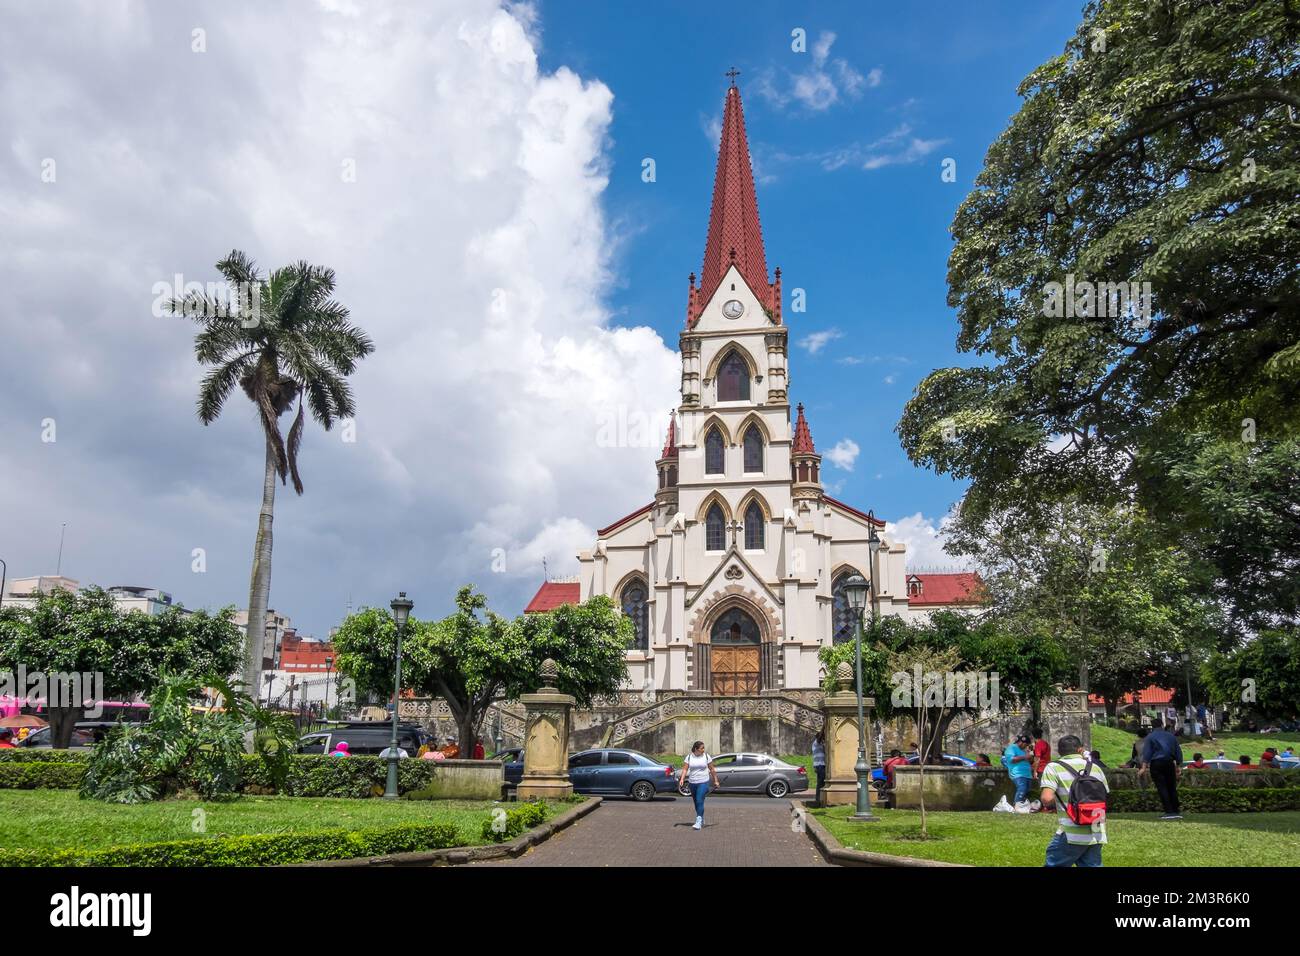 Church of La Merced and Parque Braulio Carrillo Colina in the historic center of the city of San José, Costa Rica Stock Photo